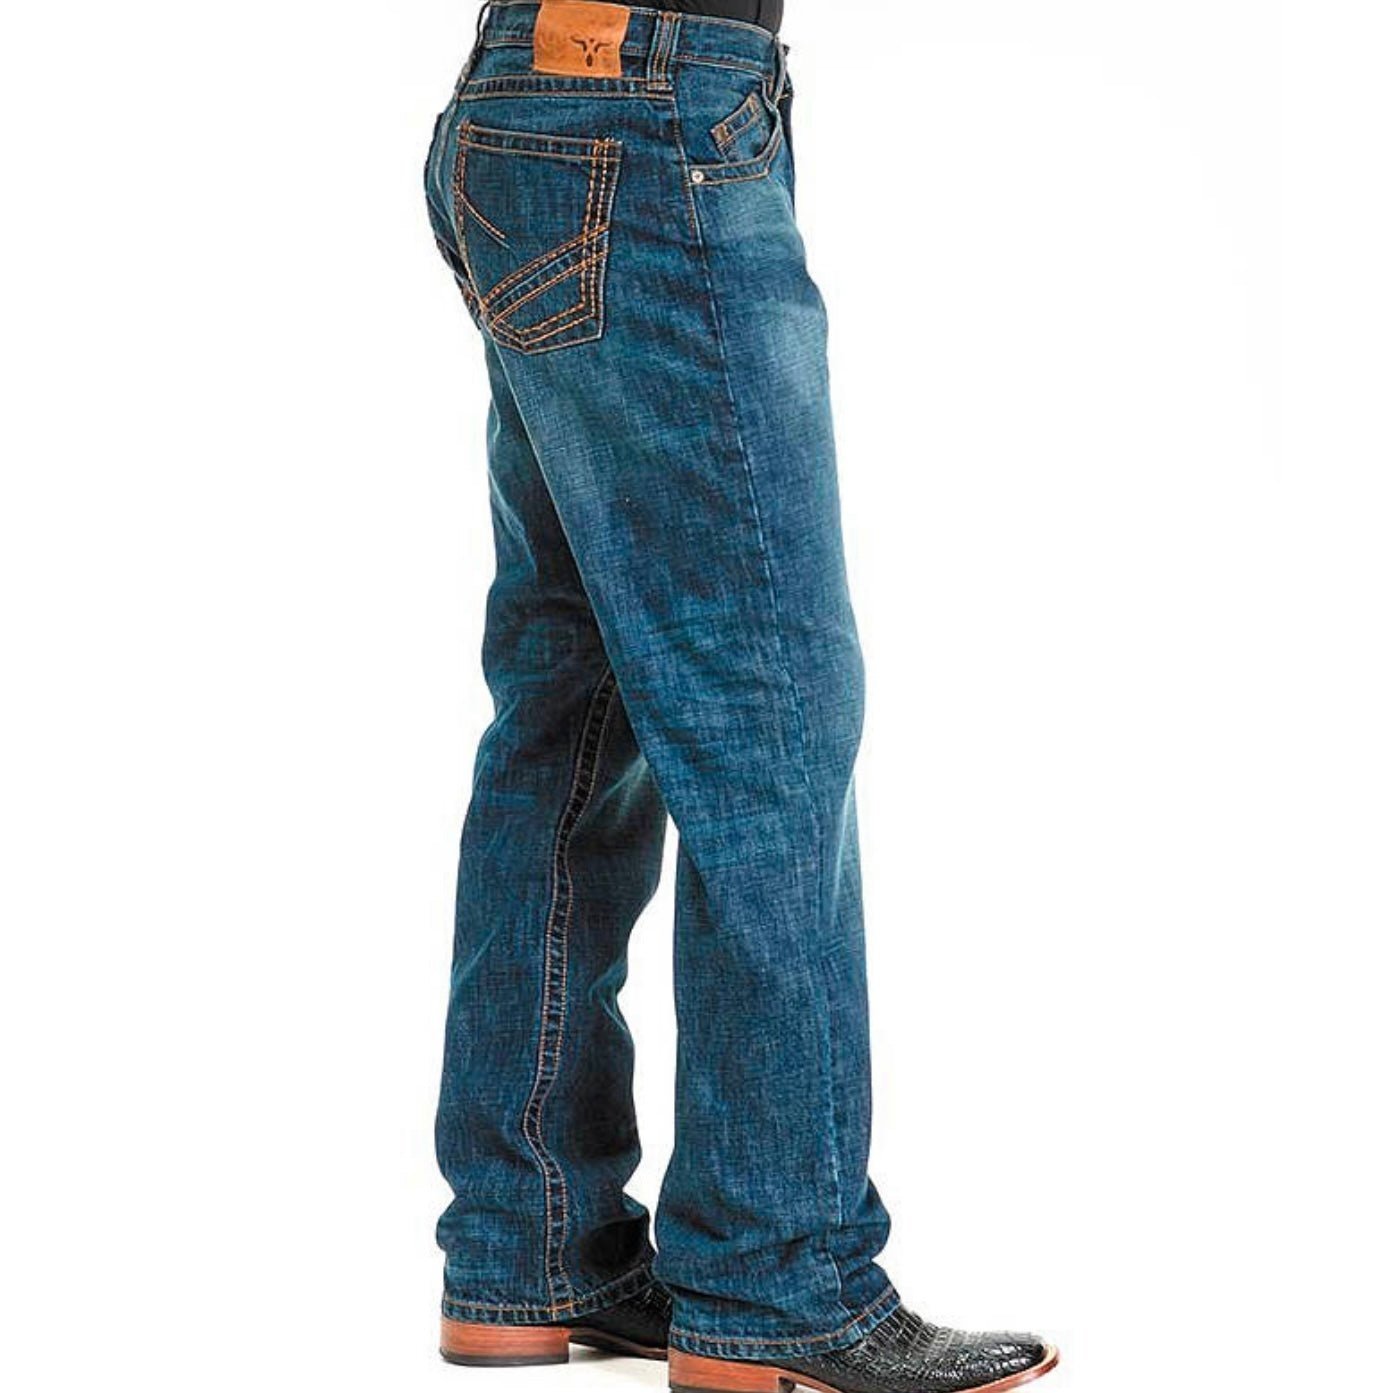 Wrangler Men's Jeans 20X Extreme Relaxed 33LTDFT - Wrangler